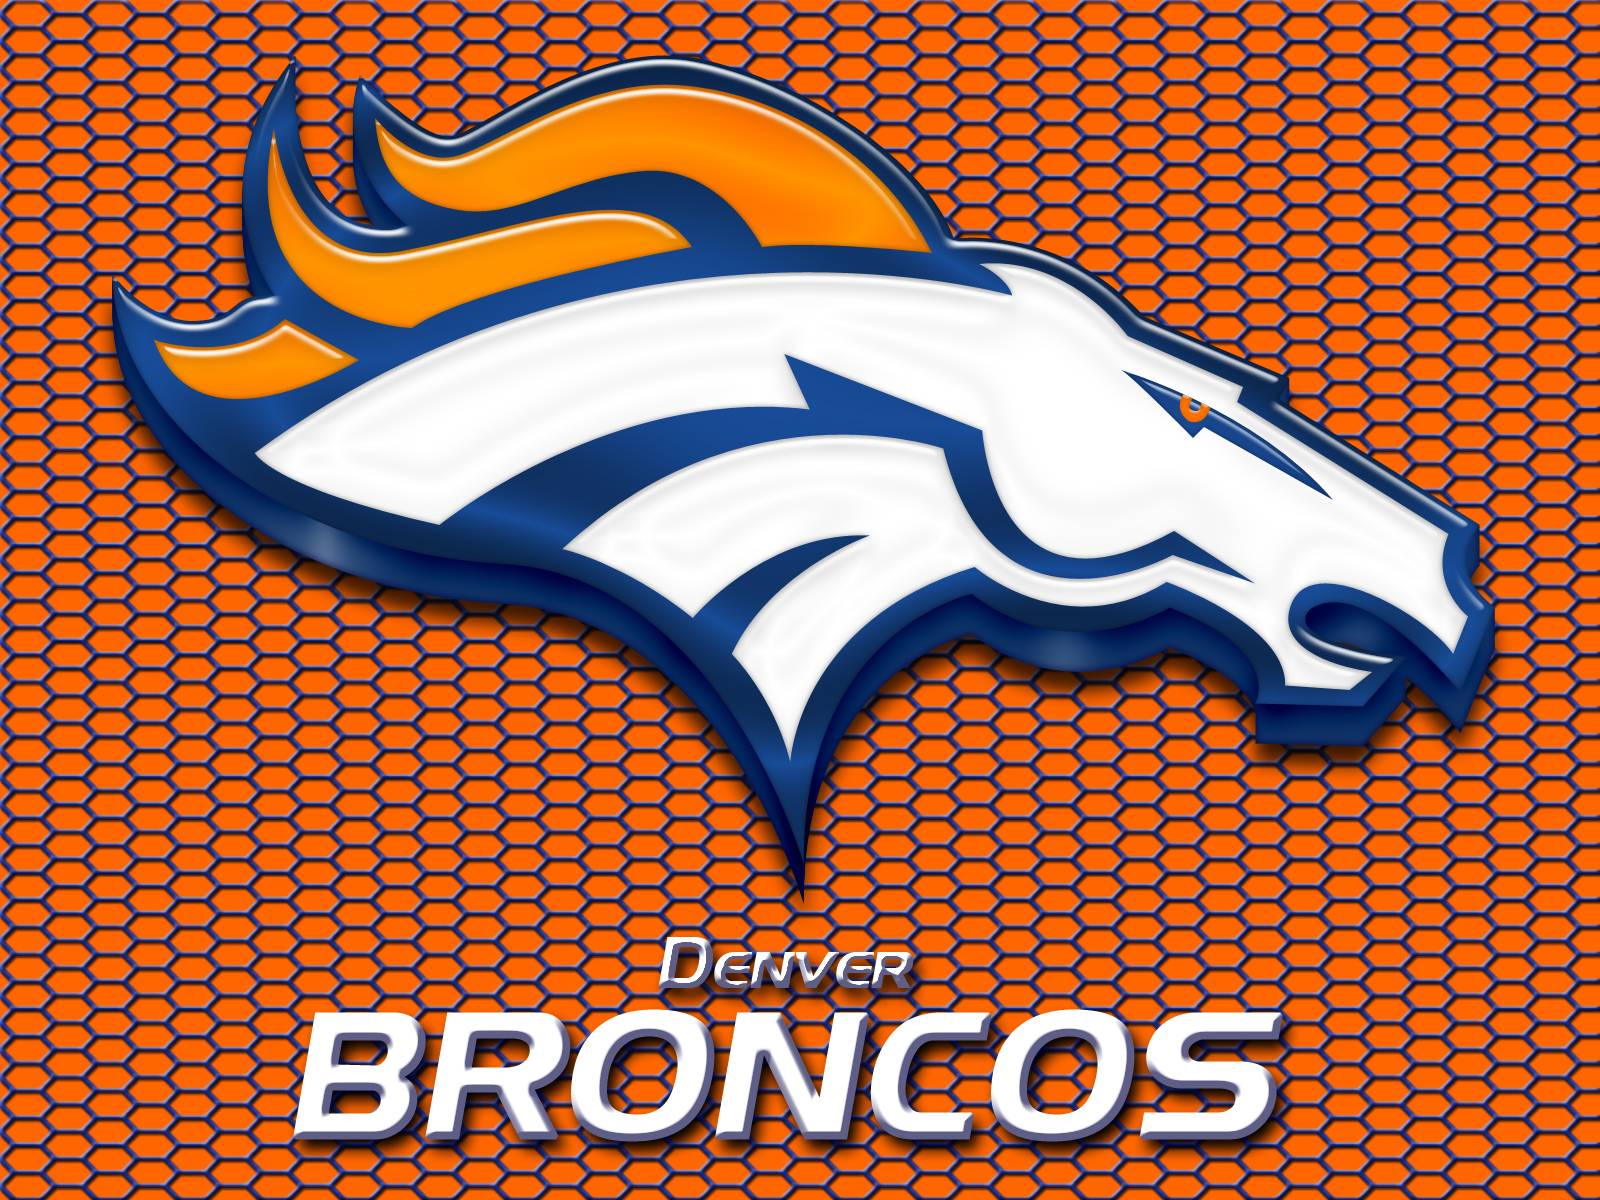 Free Denver Broncos background image. Denver Broncos wallpaper